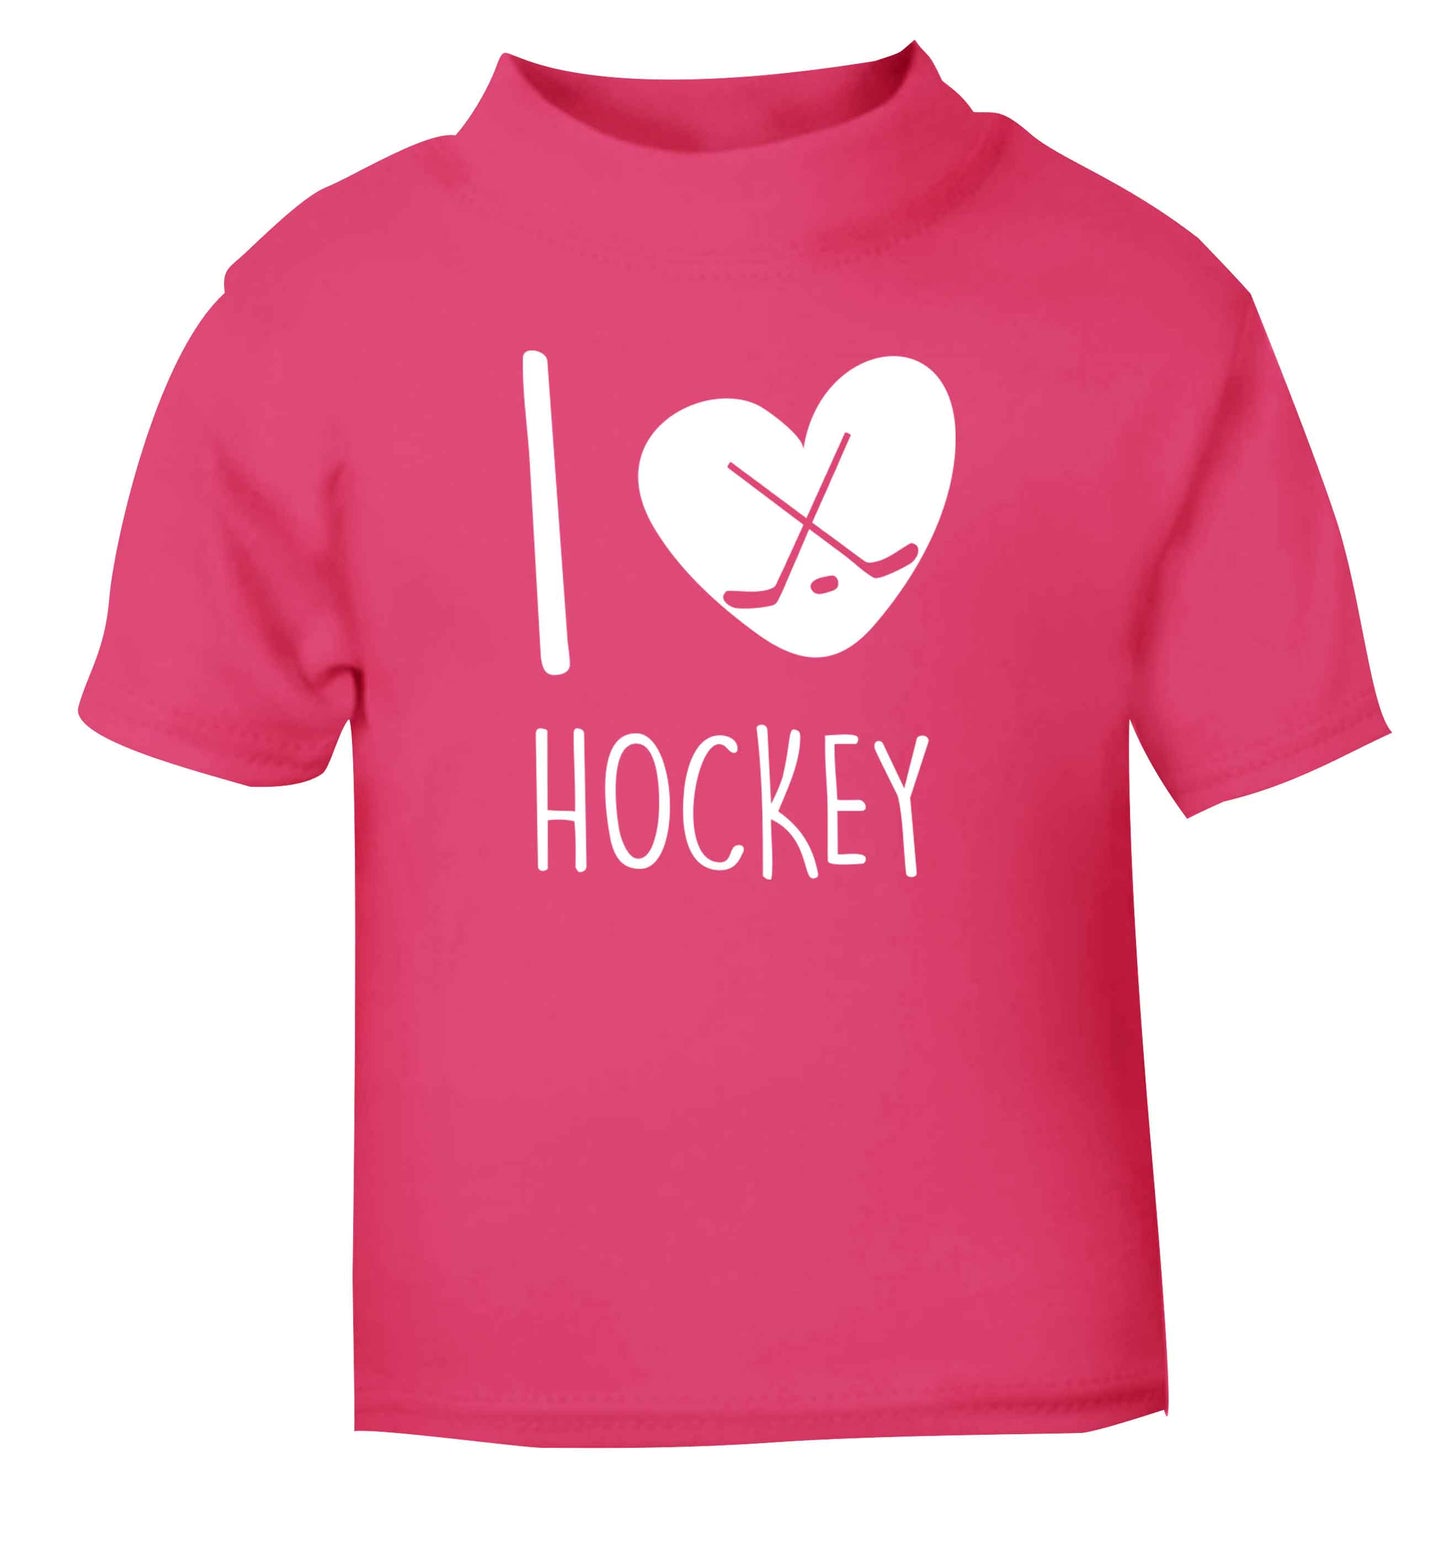 I love hockey pink Baby Toddler Tshirt 2 Years